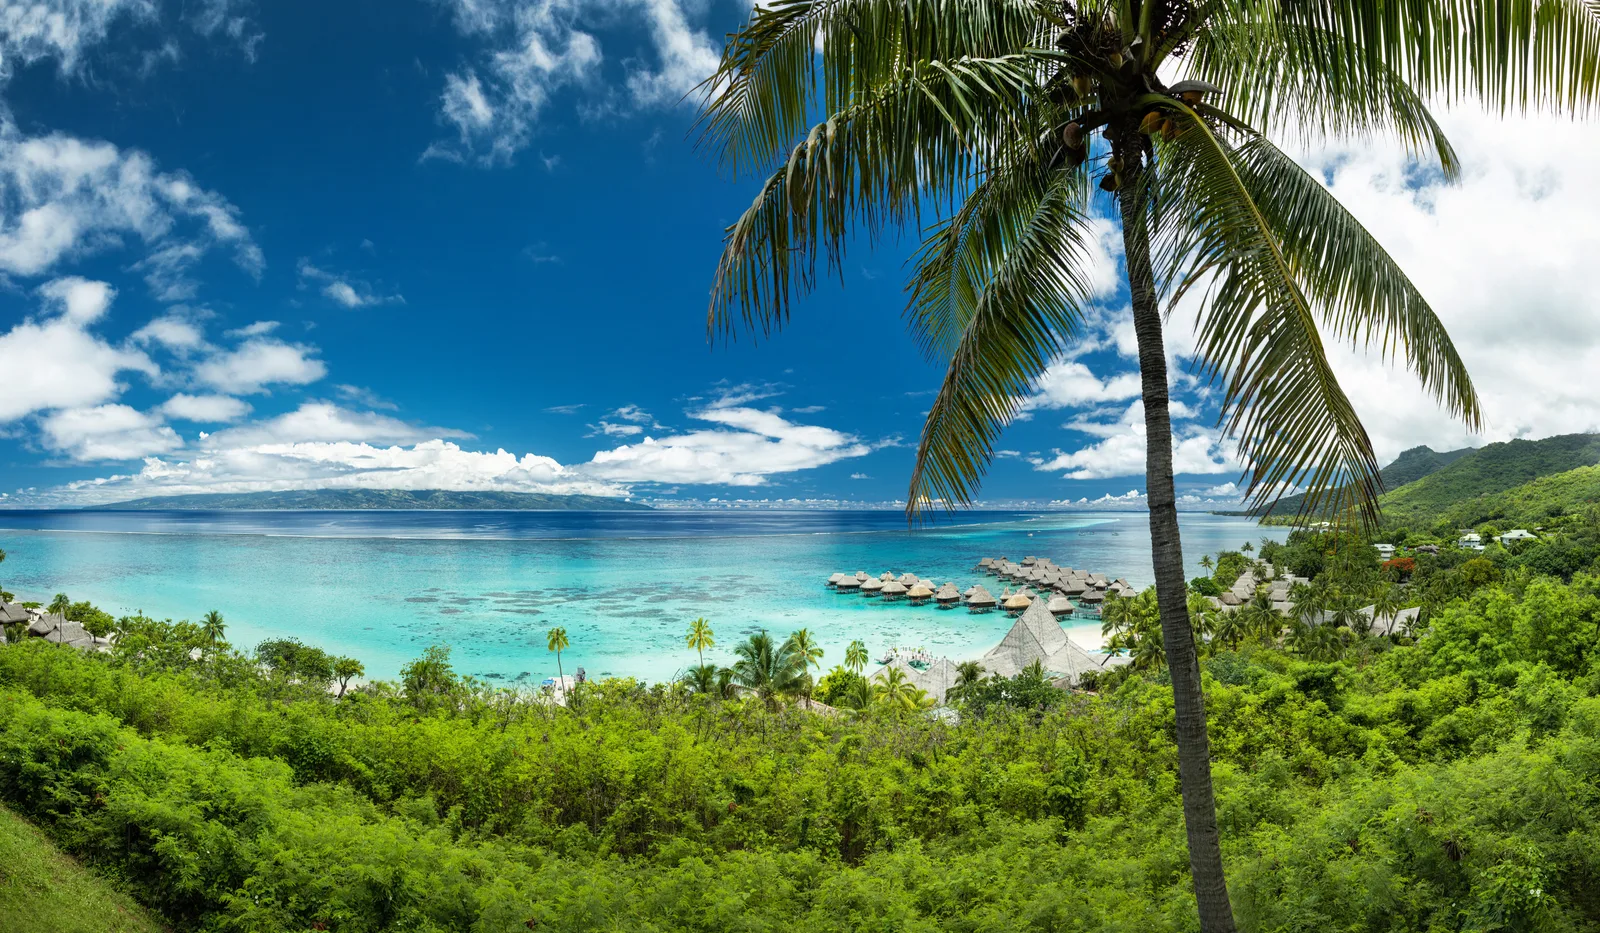 Lilikoi Moorea in Moorea Maiao (Windward Islands) - Tahiti Tourisme